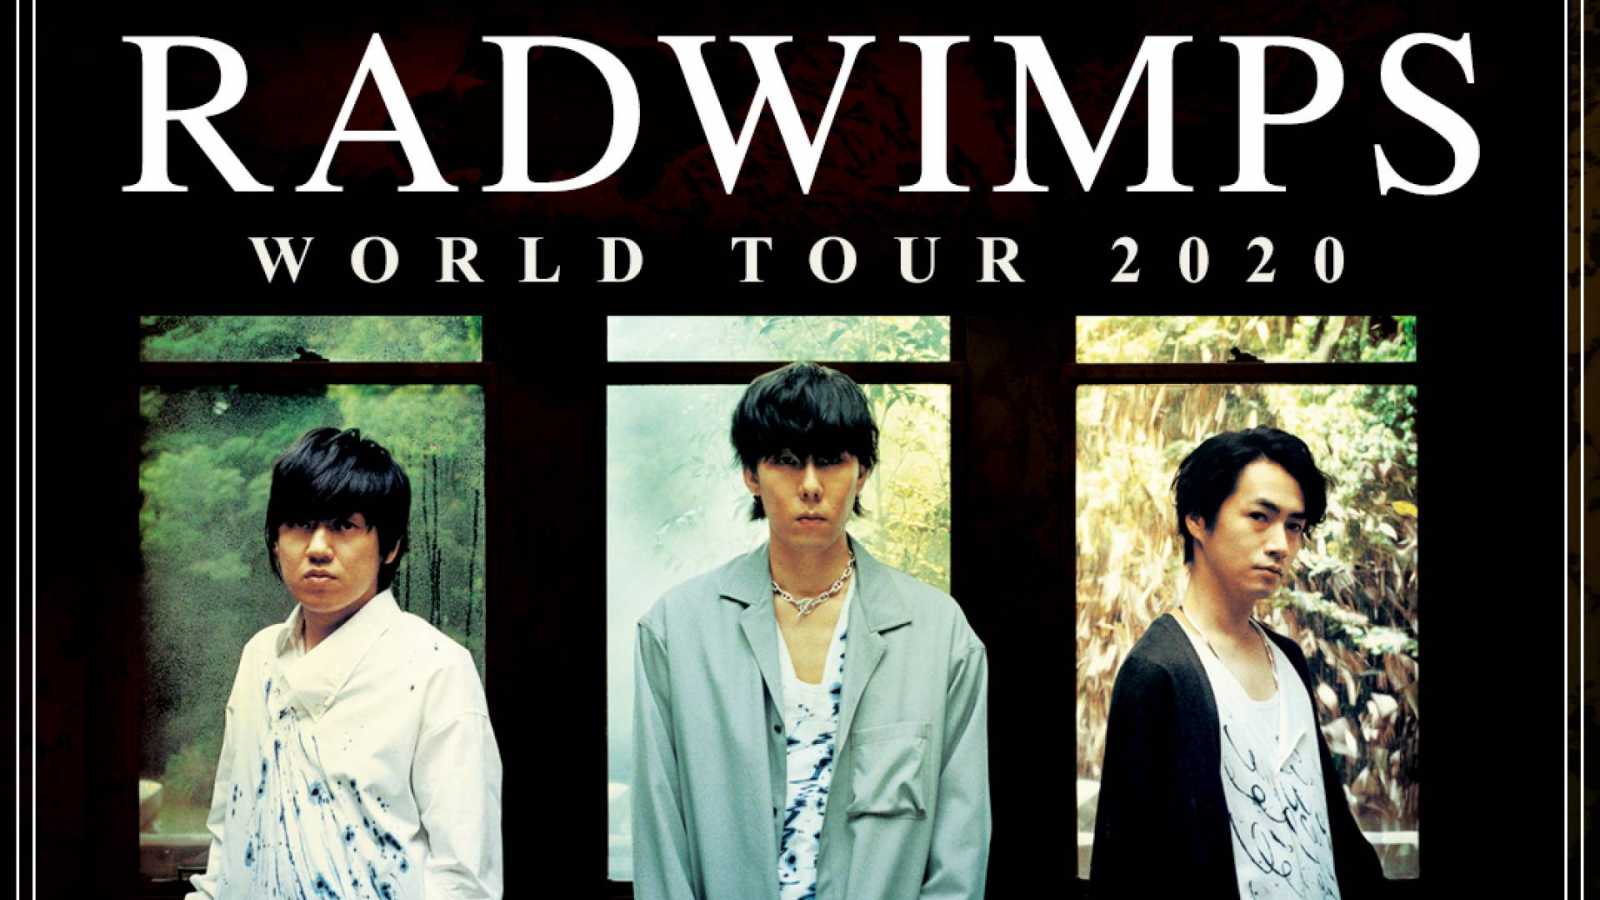 RADWIMPS ogłasza światową trasę © UNIVERSAL MUSIC JAPAN